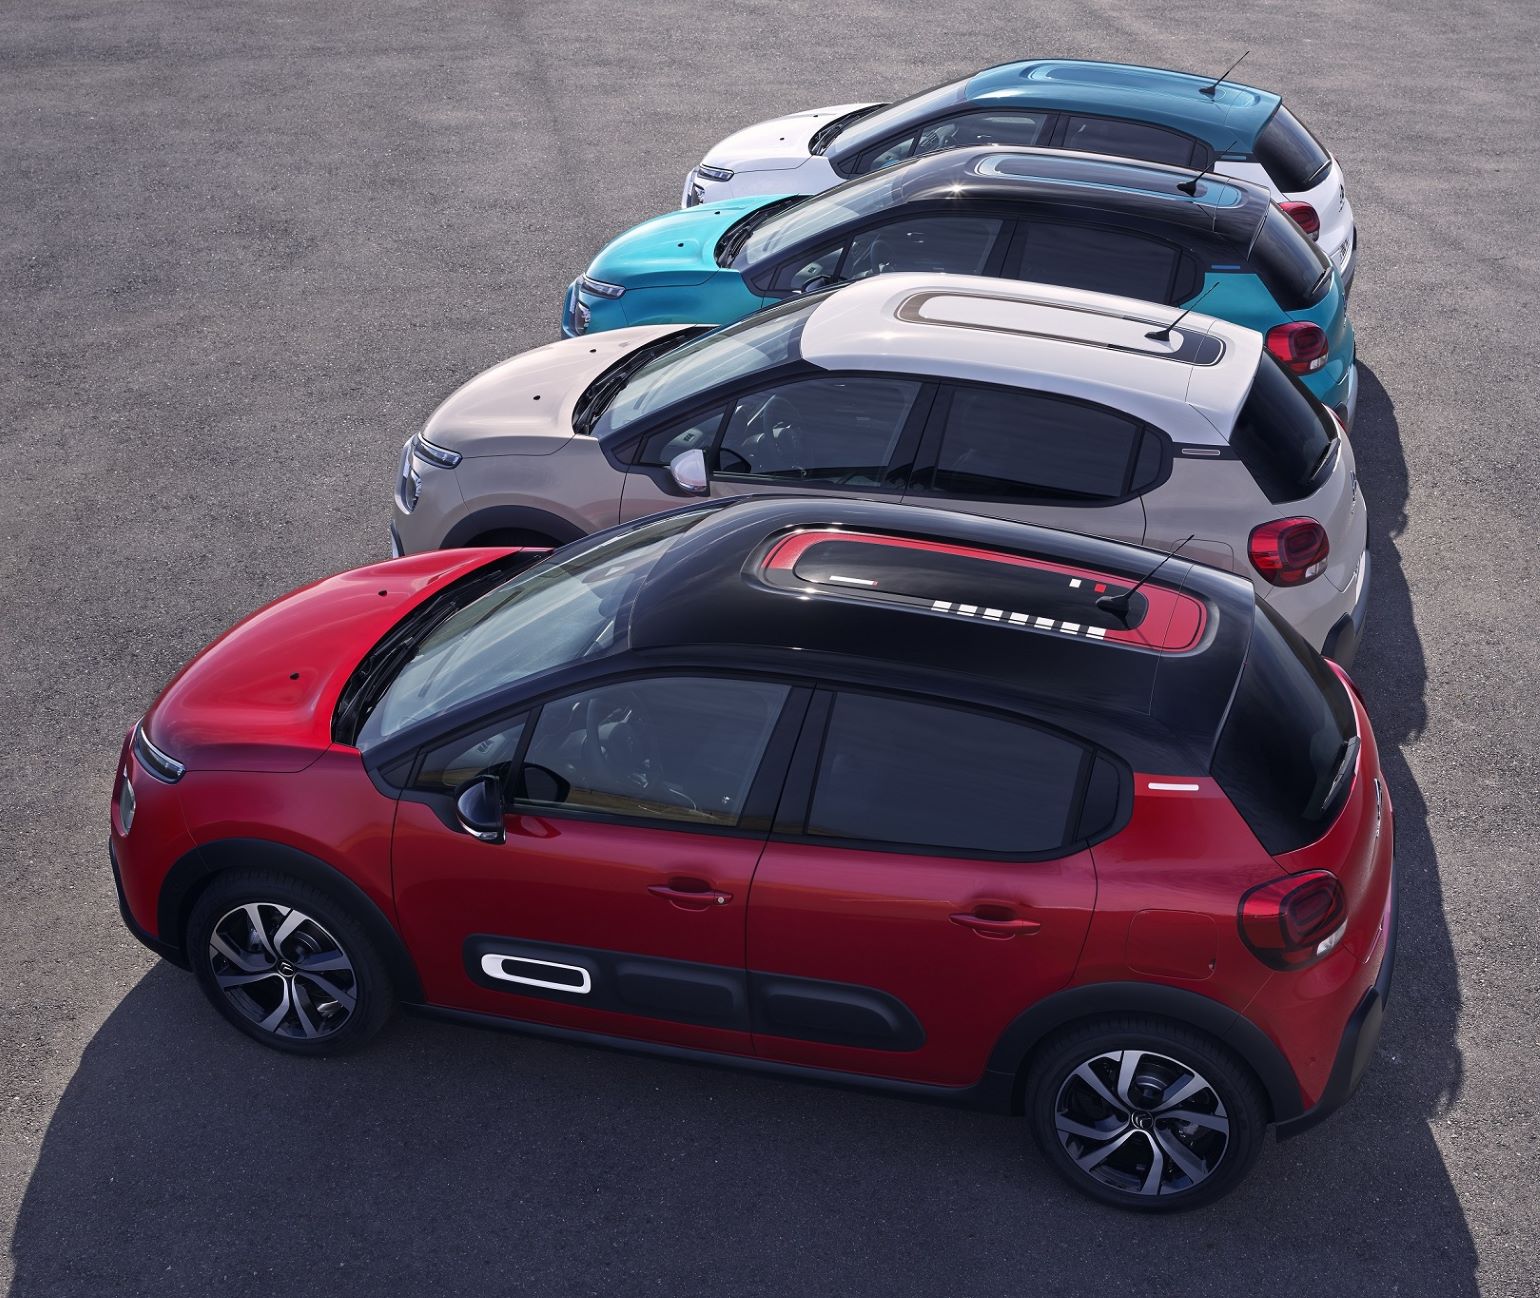 Terceira geração do Citroën C3 atinge 1 milhão de unidades produzidas 15